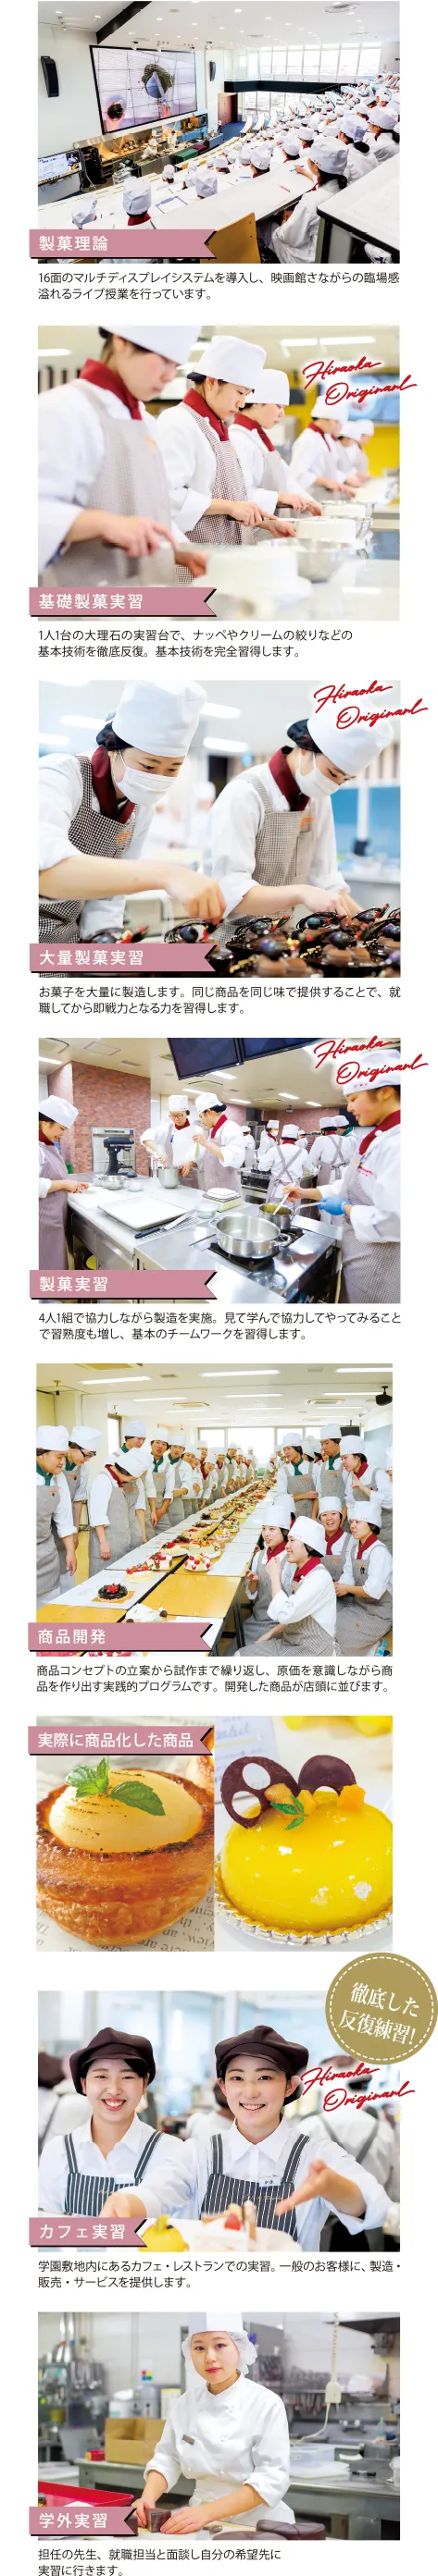 徹底した反復練習現場を想定した日本随一の環境で製菓の基本から現場に即した実践まで